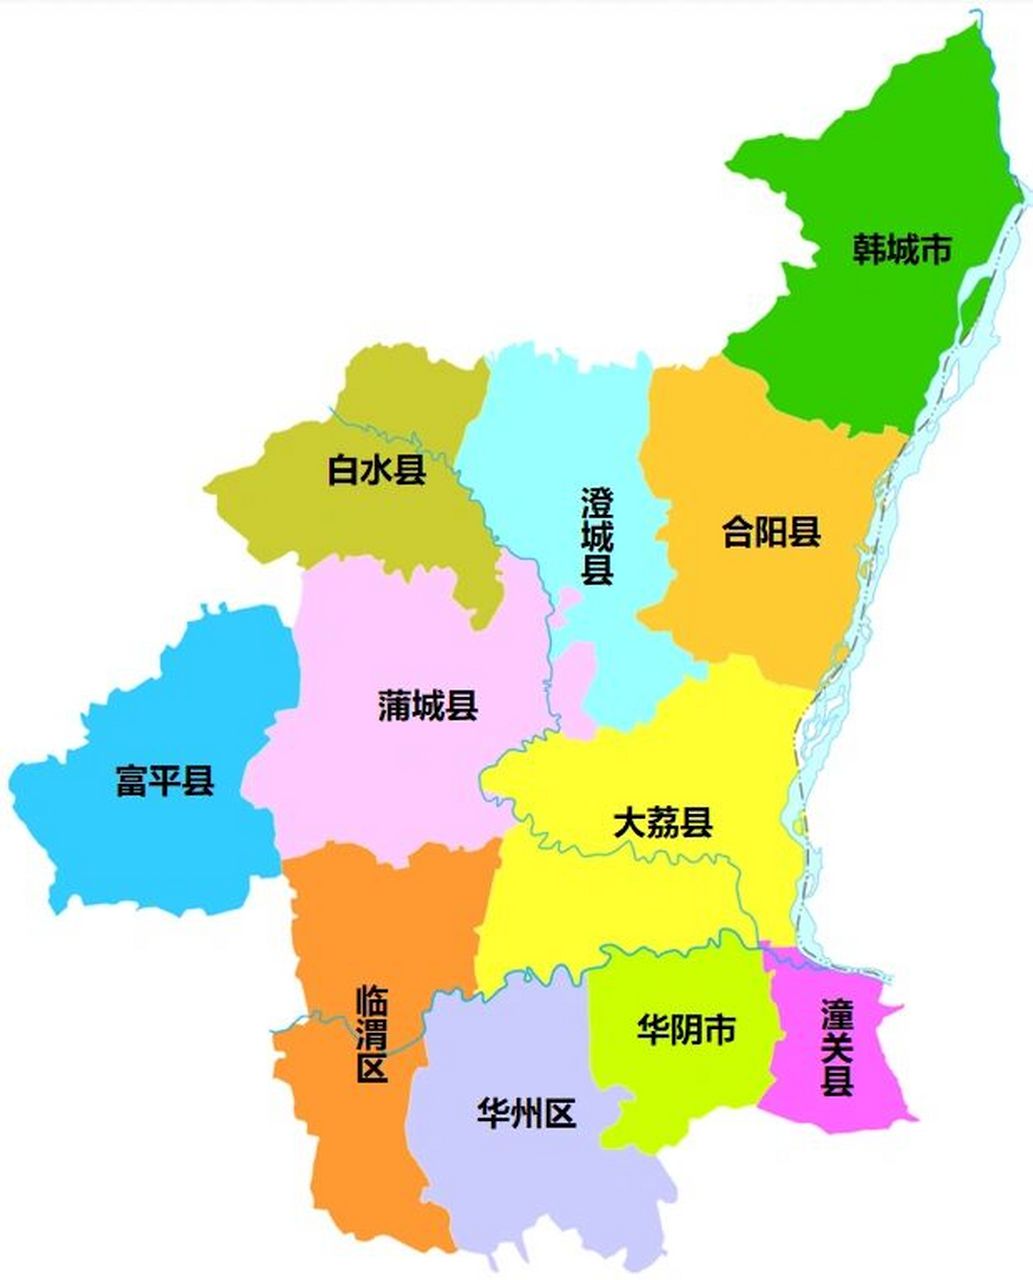 渭南行政区划 渭南市,陕西省辖地级市,总面积为13030平方公里,常住